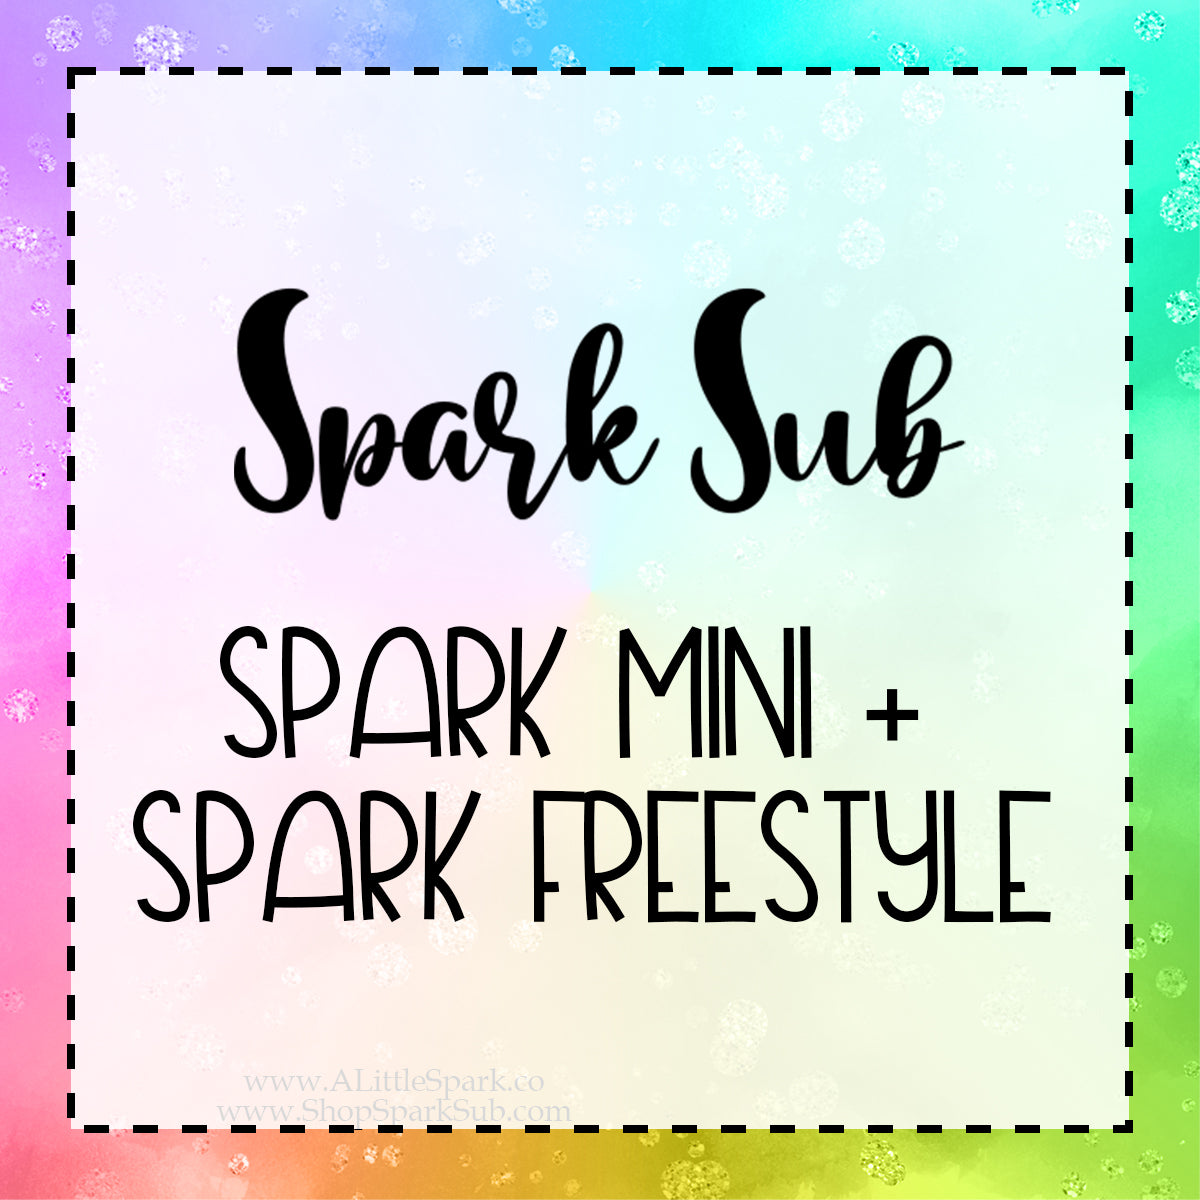 Spark Mini + Freestyle